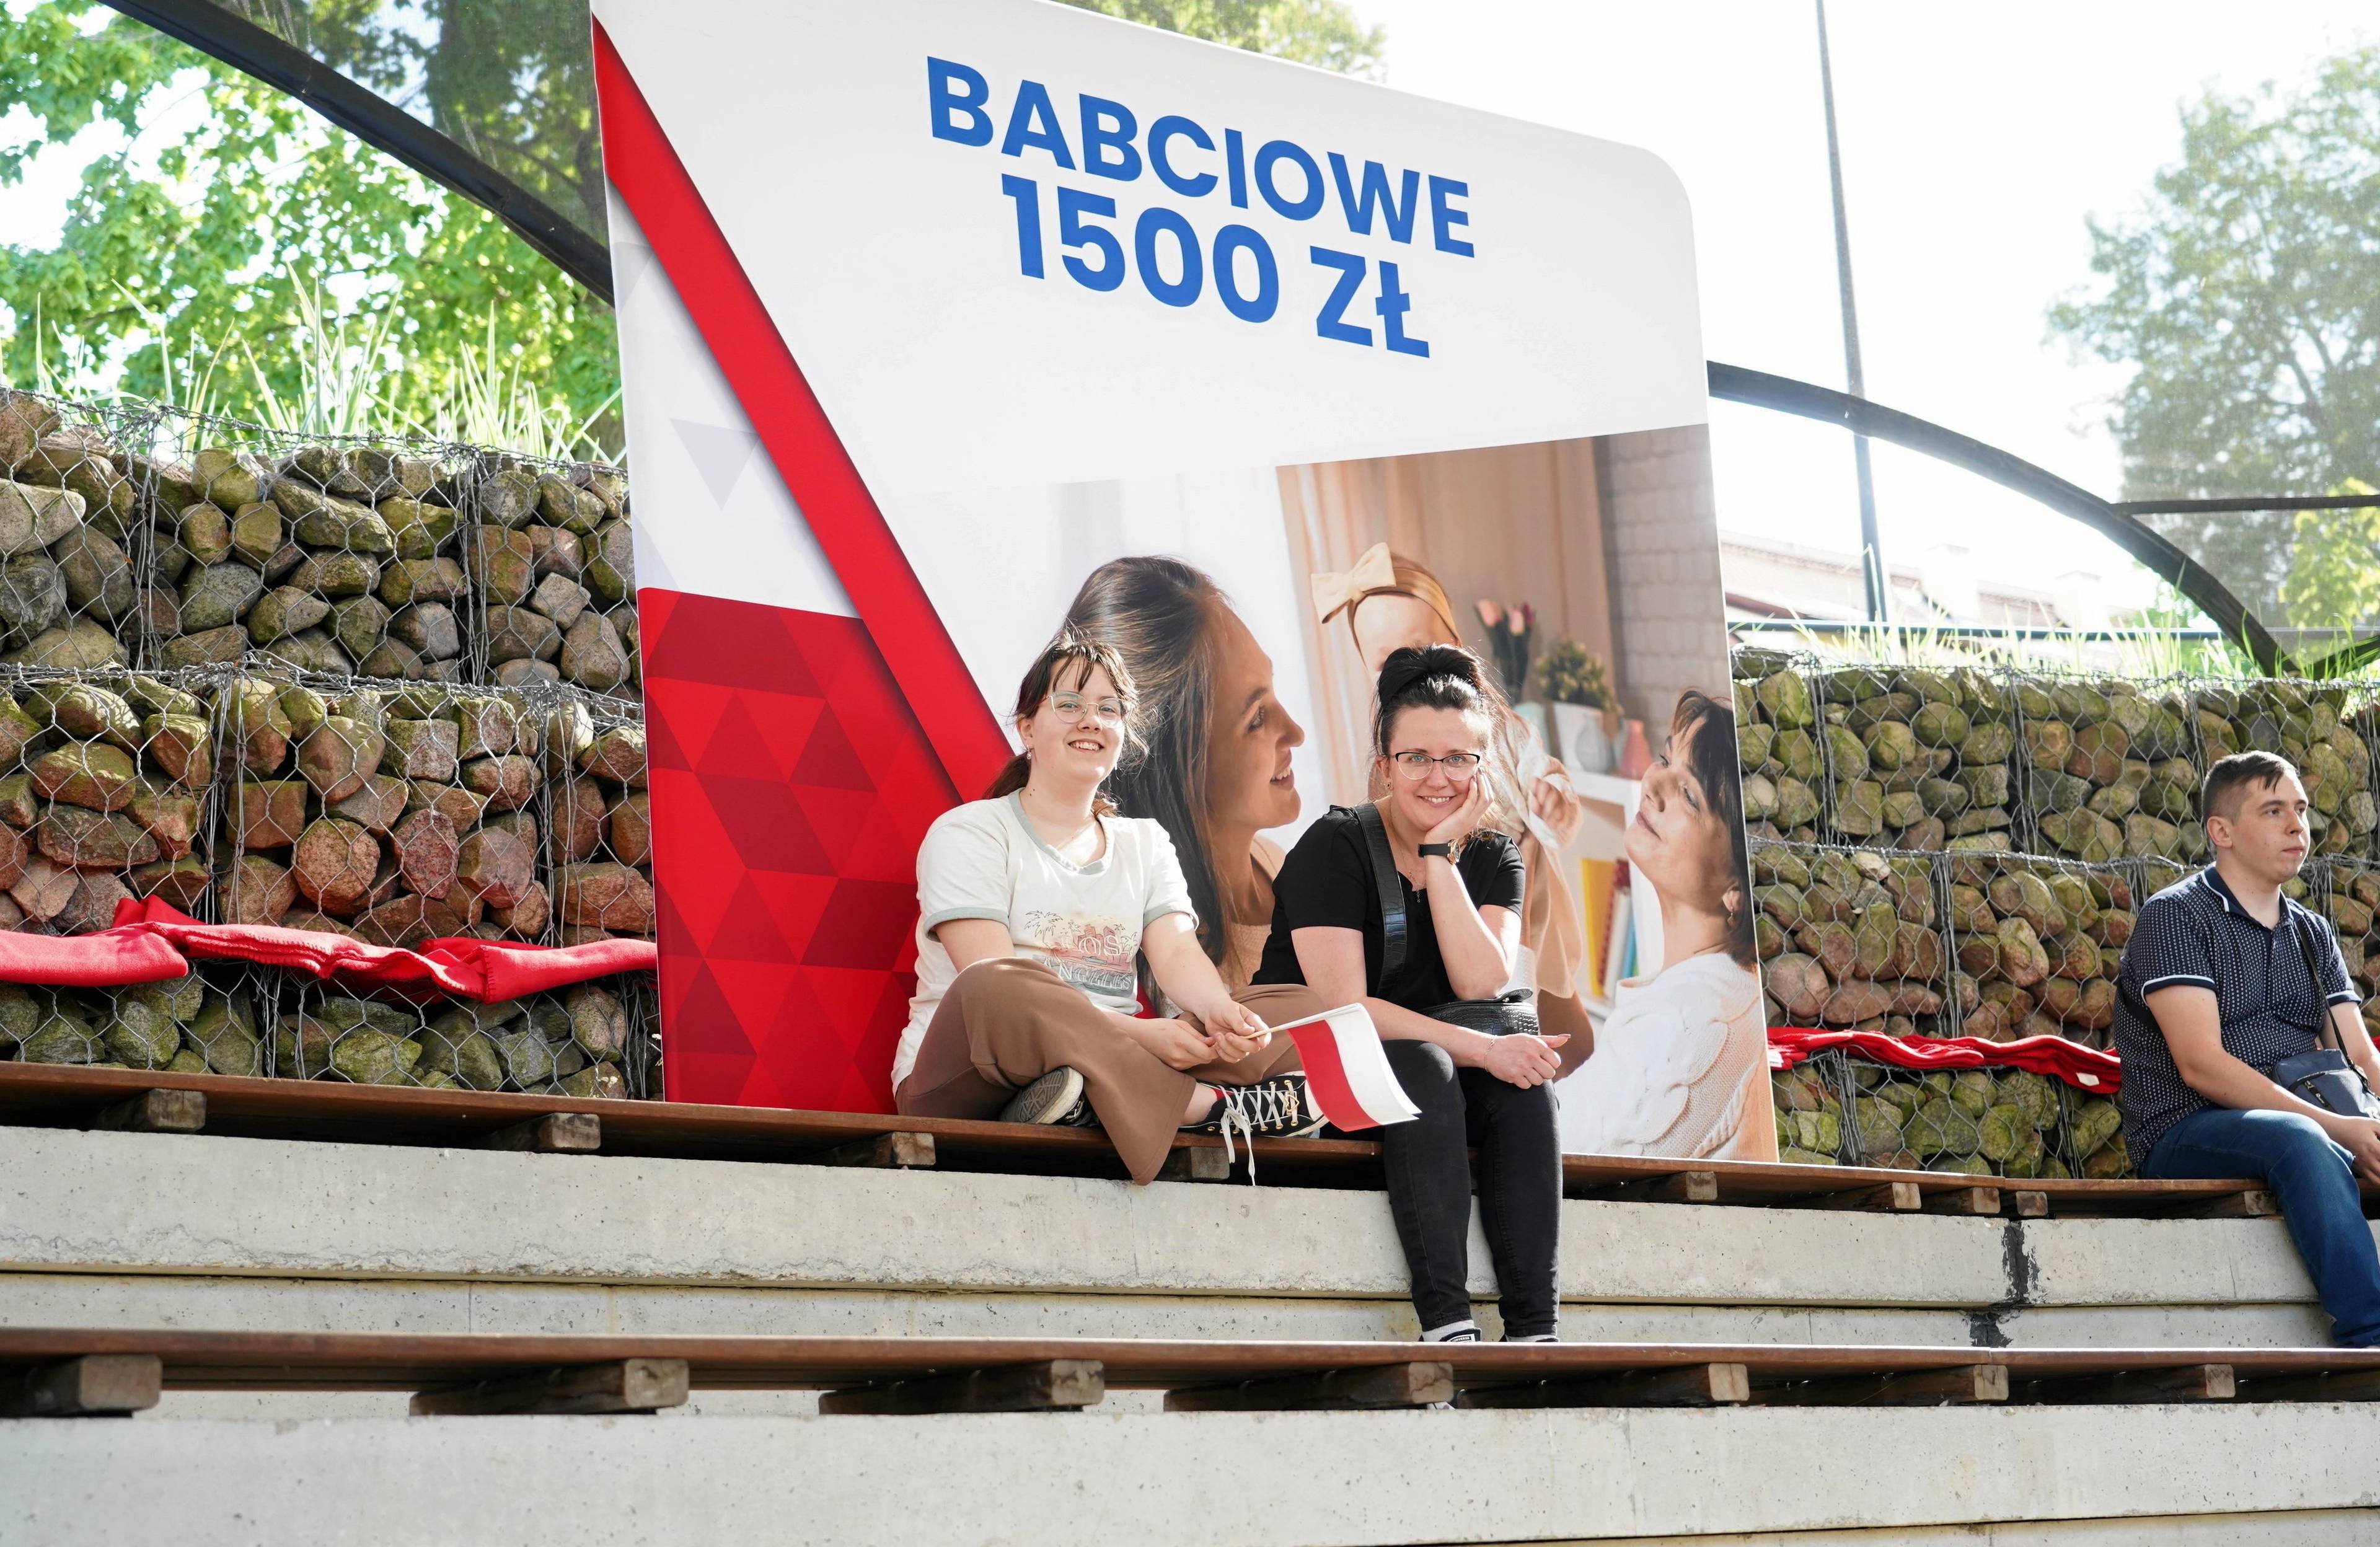 Dwie dziewczyny siedzą na tle plakatu z transparentem "Babciowe 1500 zł"